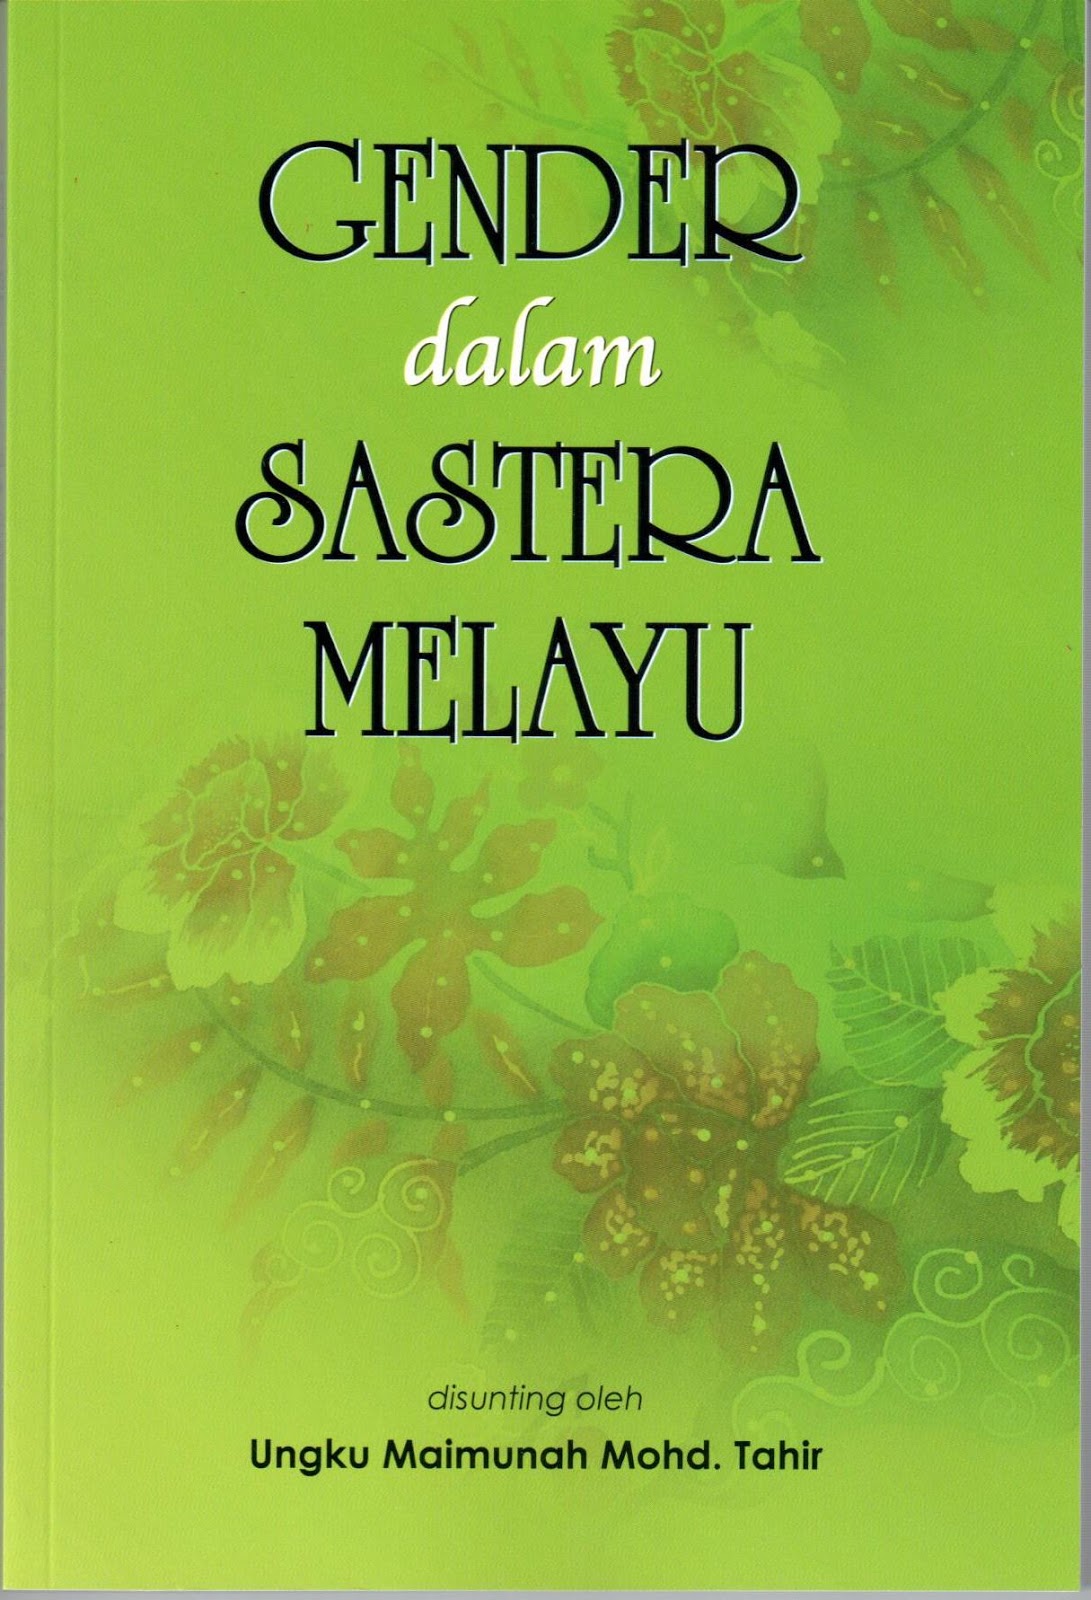 .: RAUDAH AL-'ILM :.: Buku Terbaru Prof. Dr. Ungku 